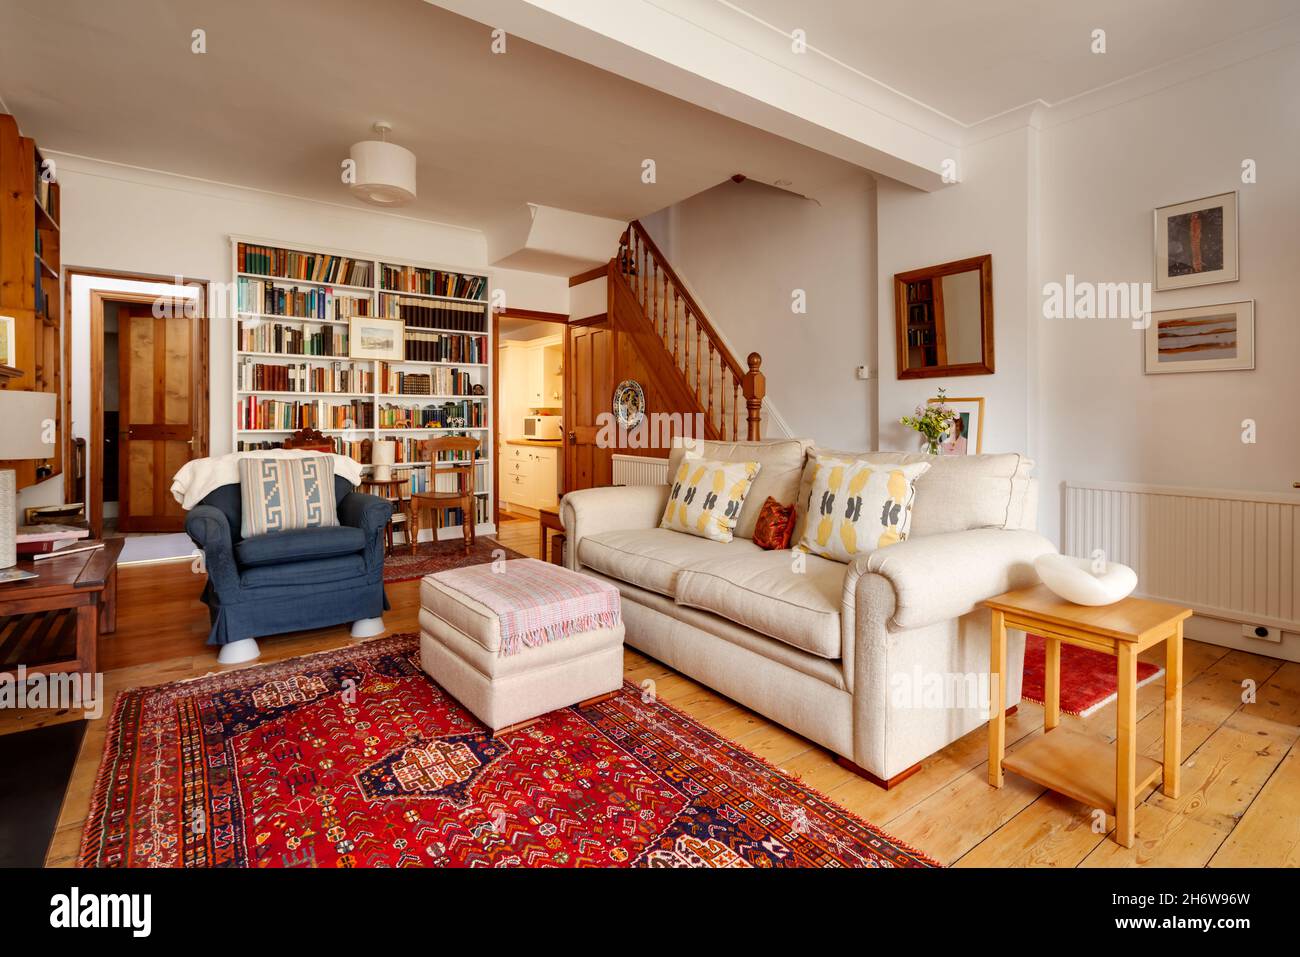 Cambridge, England - Oktober 29 2019: Traditionelles britisches Wohnzimmer mit einigen originalen Elementen, darunter einem atemberaubenden Holzboden Stockfoto